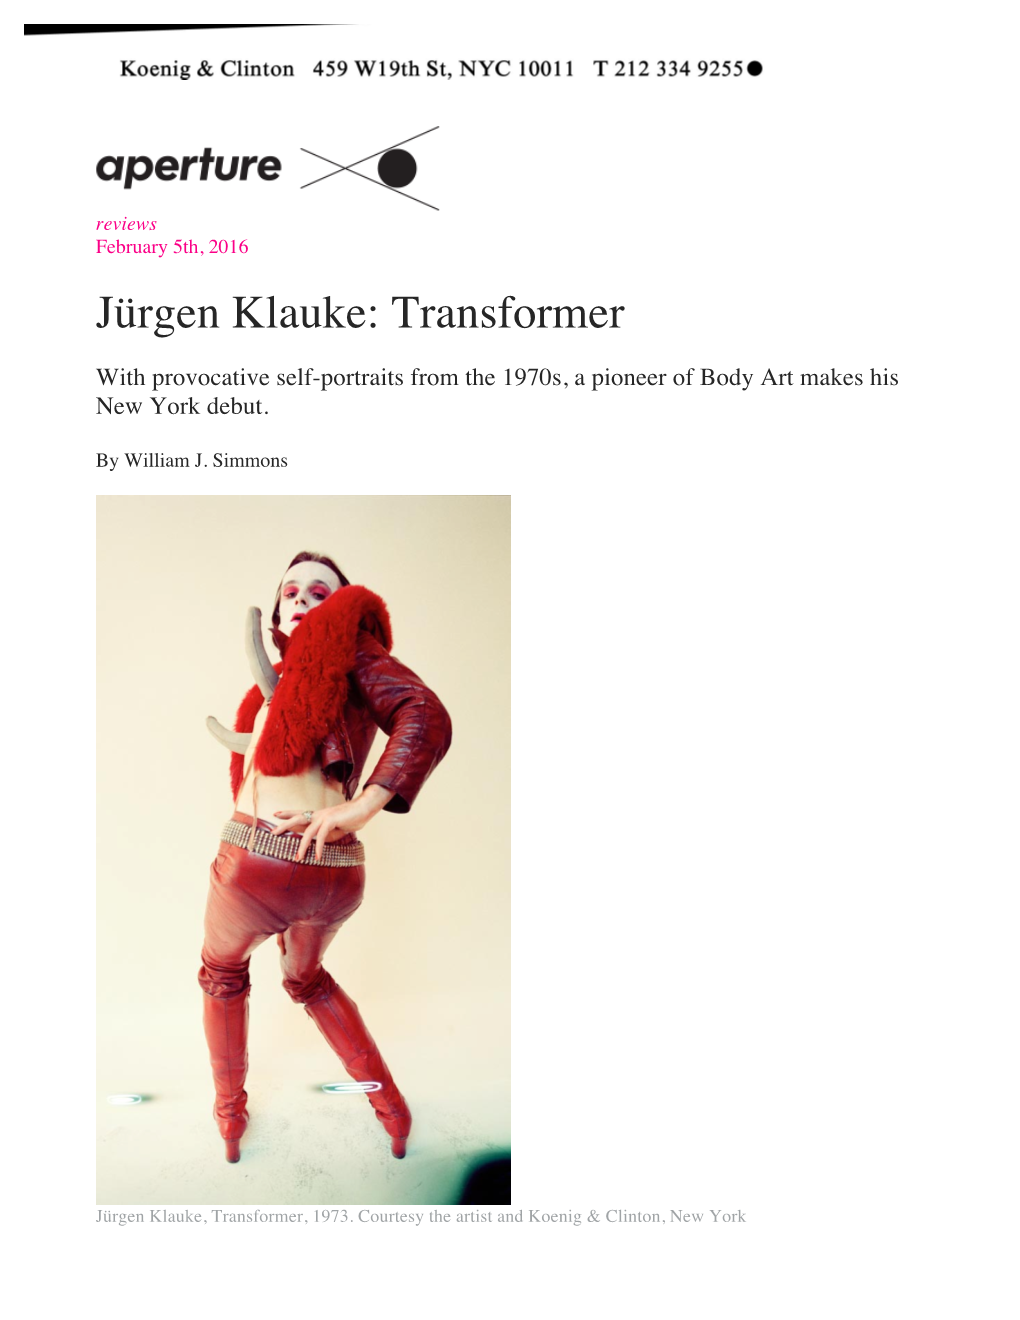 Jürgen Klauke: Transformer